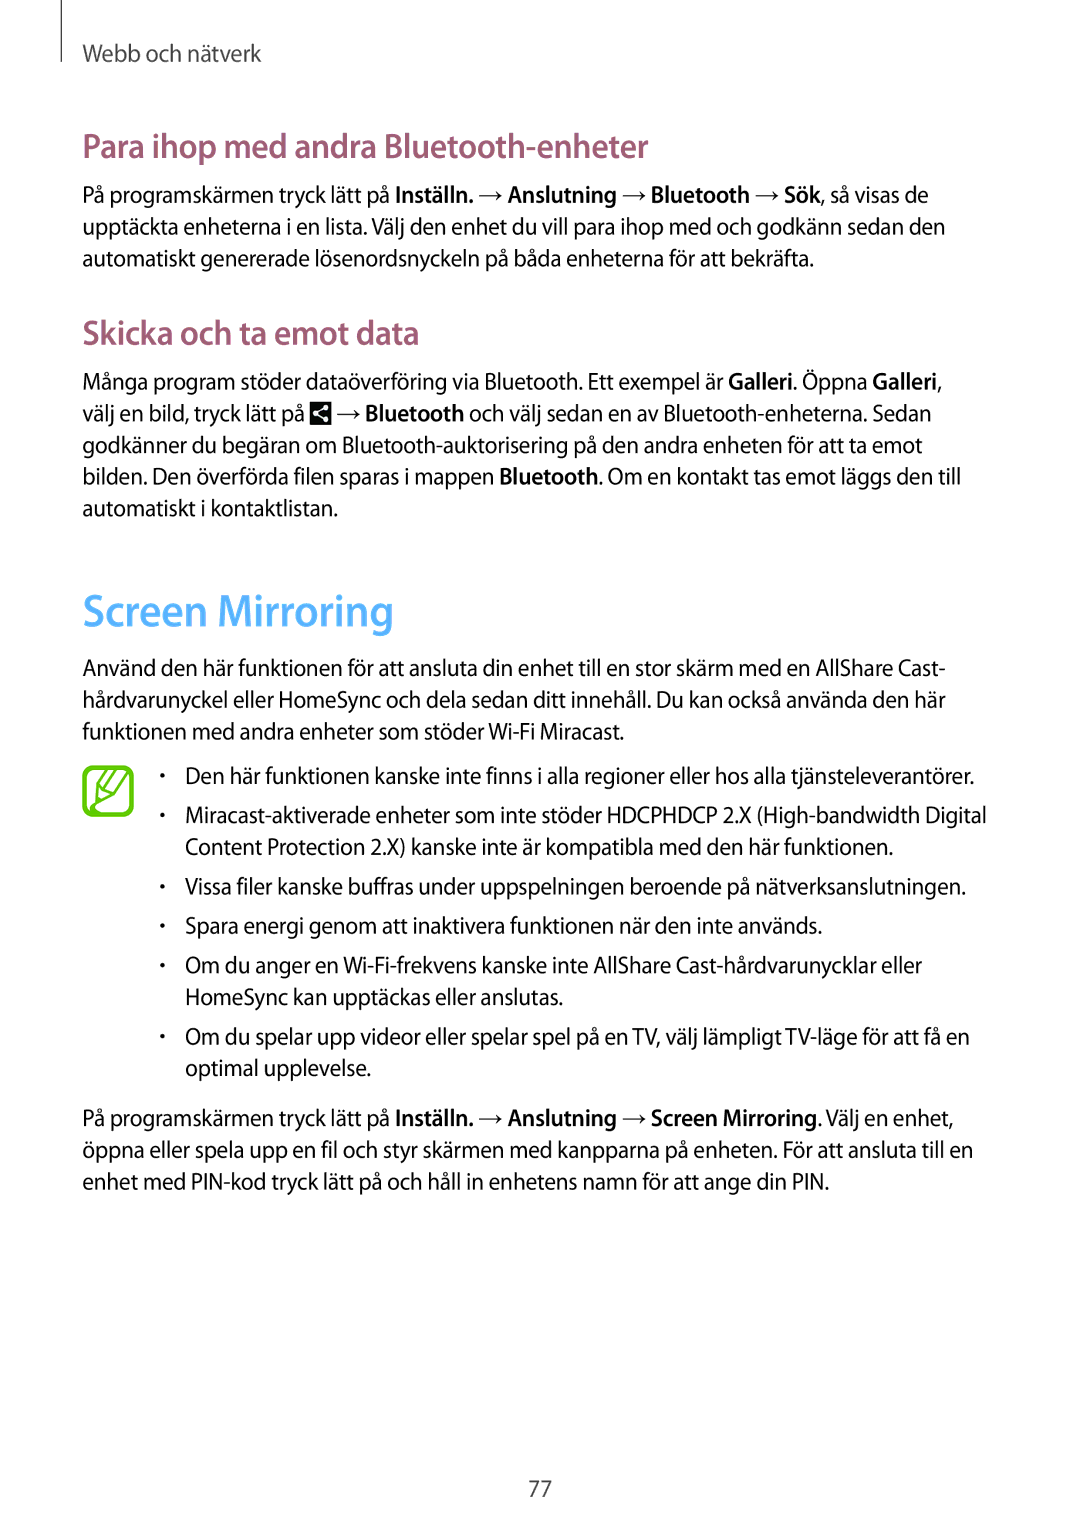 Samsung SM-N7505ZWANEE, SM-N7505ZKANEE Screen Mirroring, Para ihop med andra Bluetooth-enheter, Skicka och ta emot data 